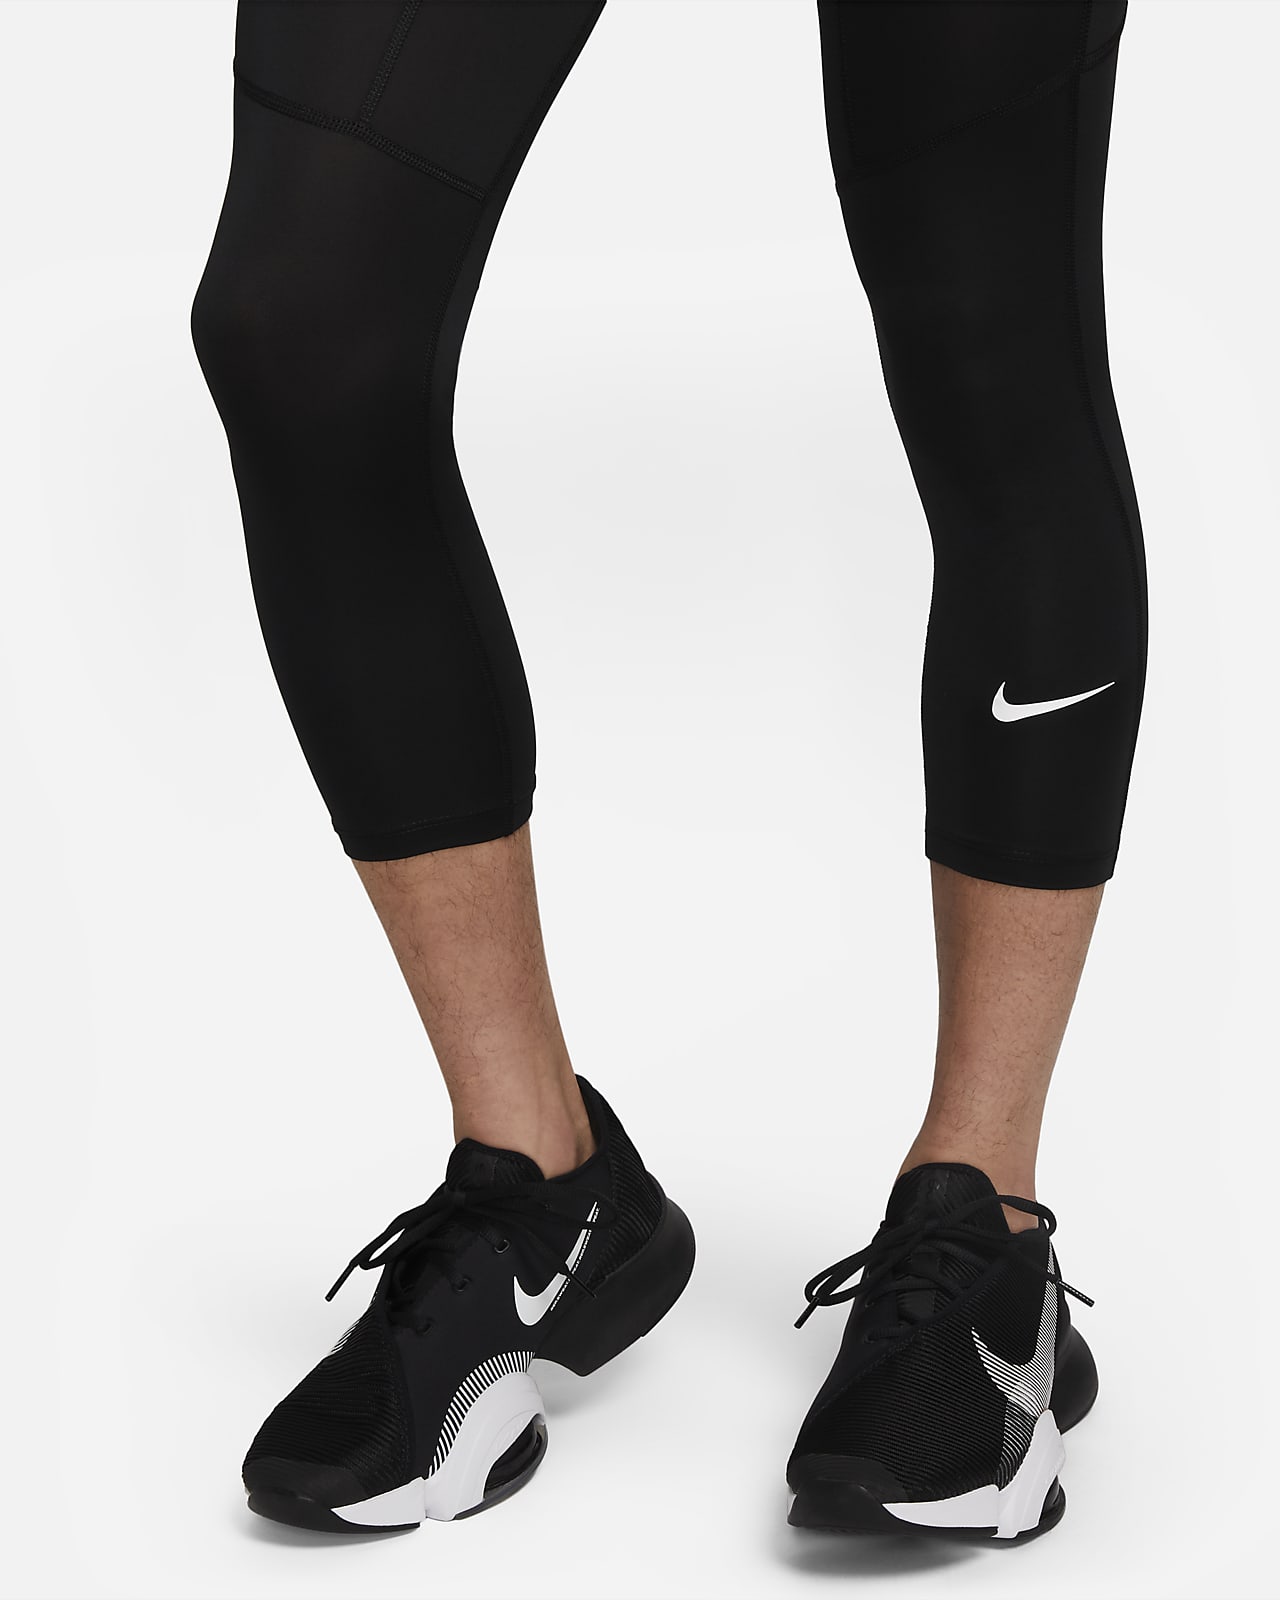 Nike Pro Men' Black/White Dri-FIT 3/4 Fitness Pockets Tights (FB7950-010)  Size M